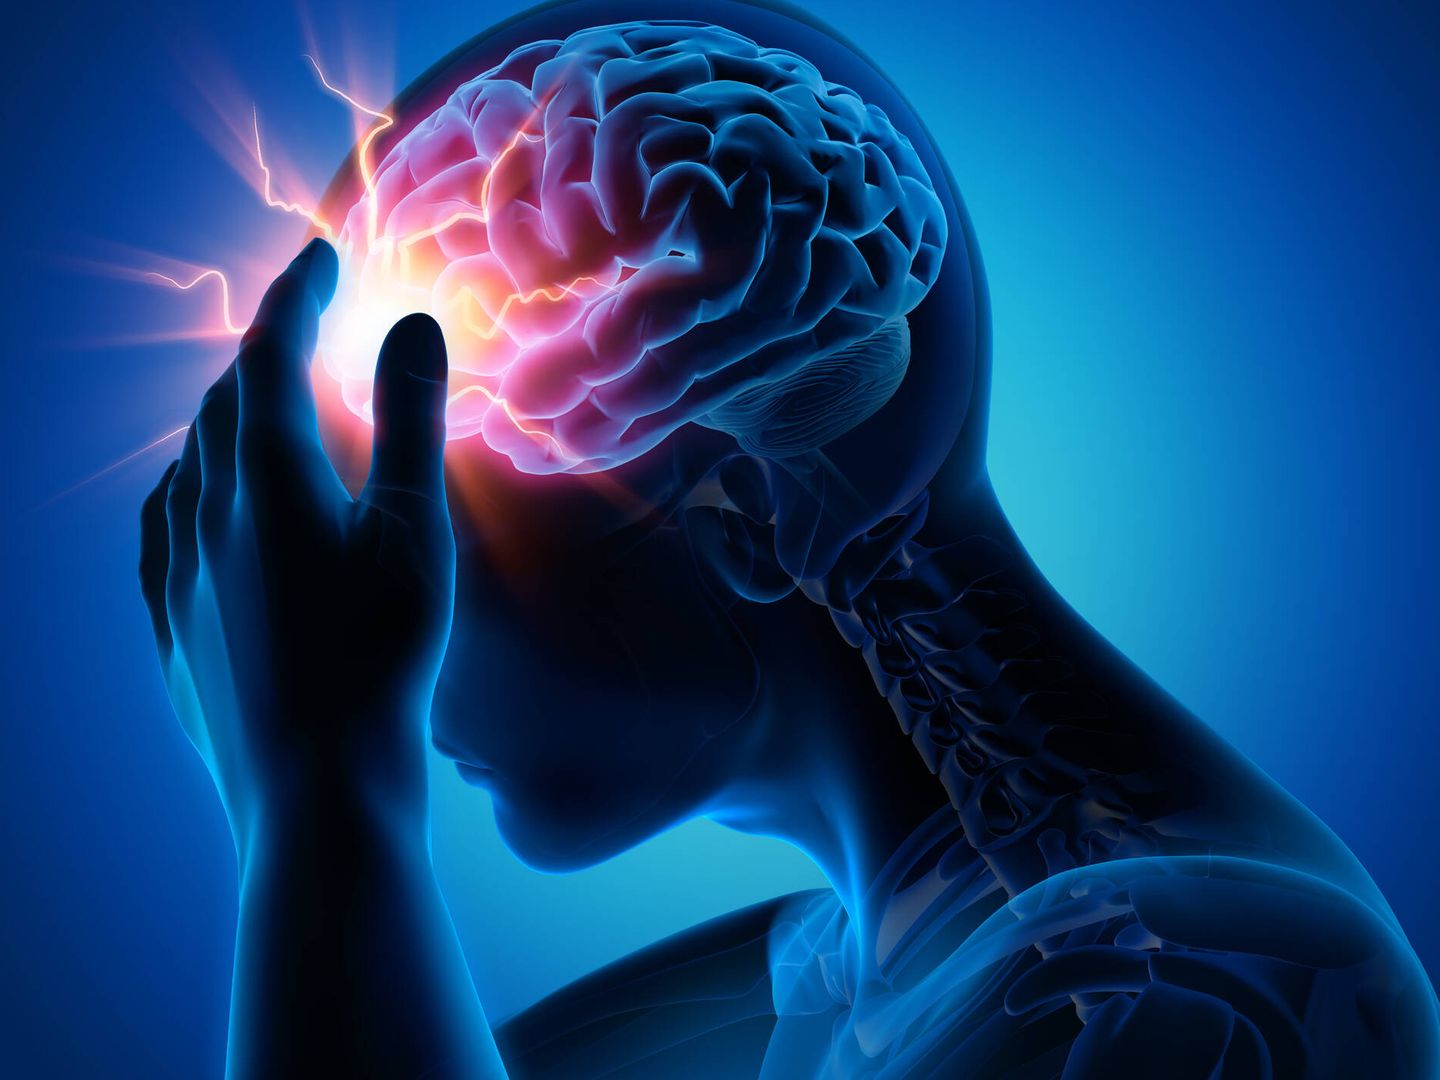 Identificar el punto del dolor ayuda a establecer el tipo de cefalea que se sufre. (iStock)